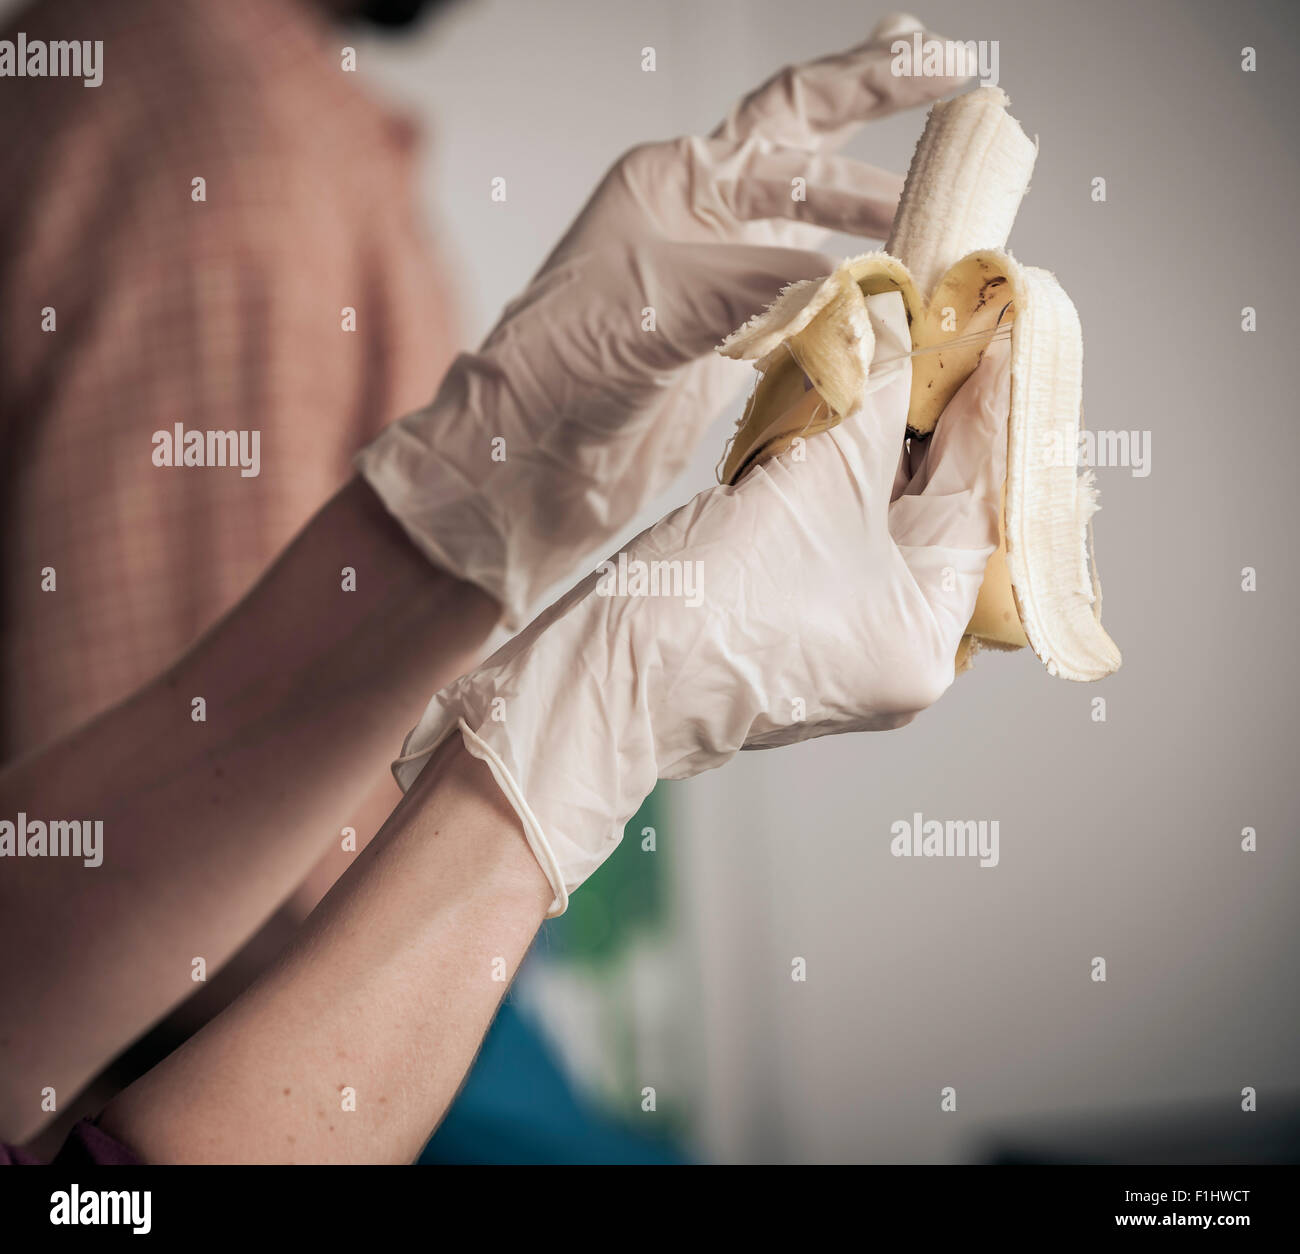 Persona che mangia il banana con guanti in Foto Stock